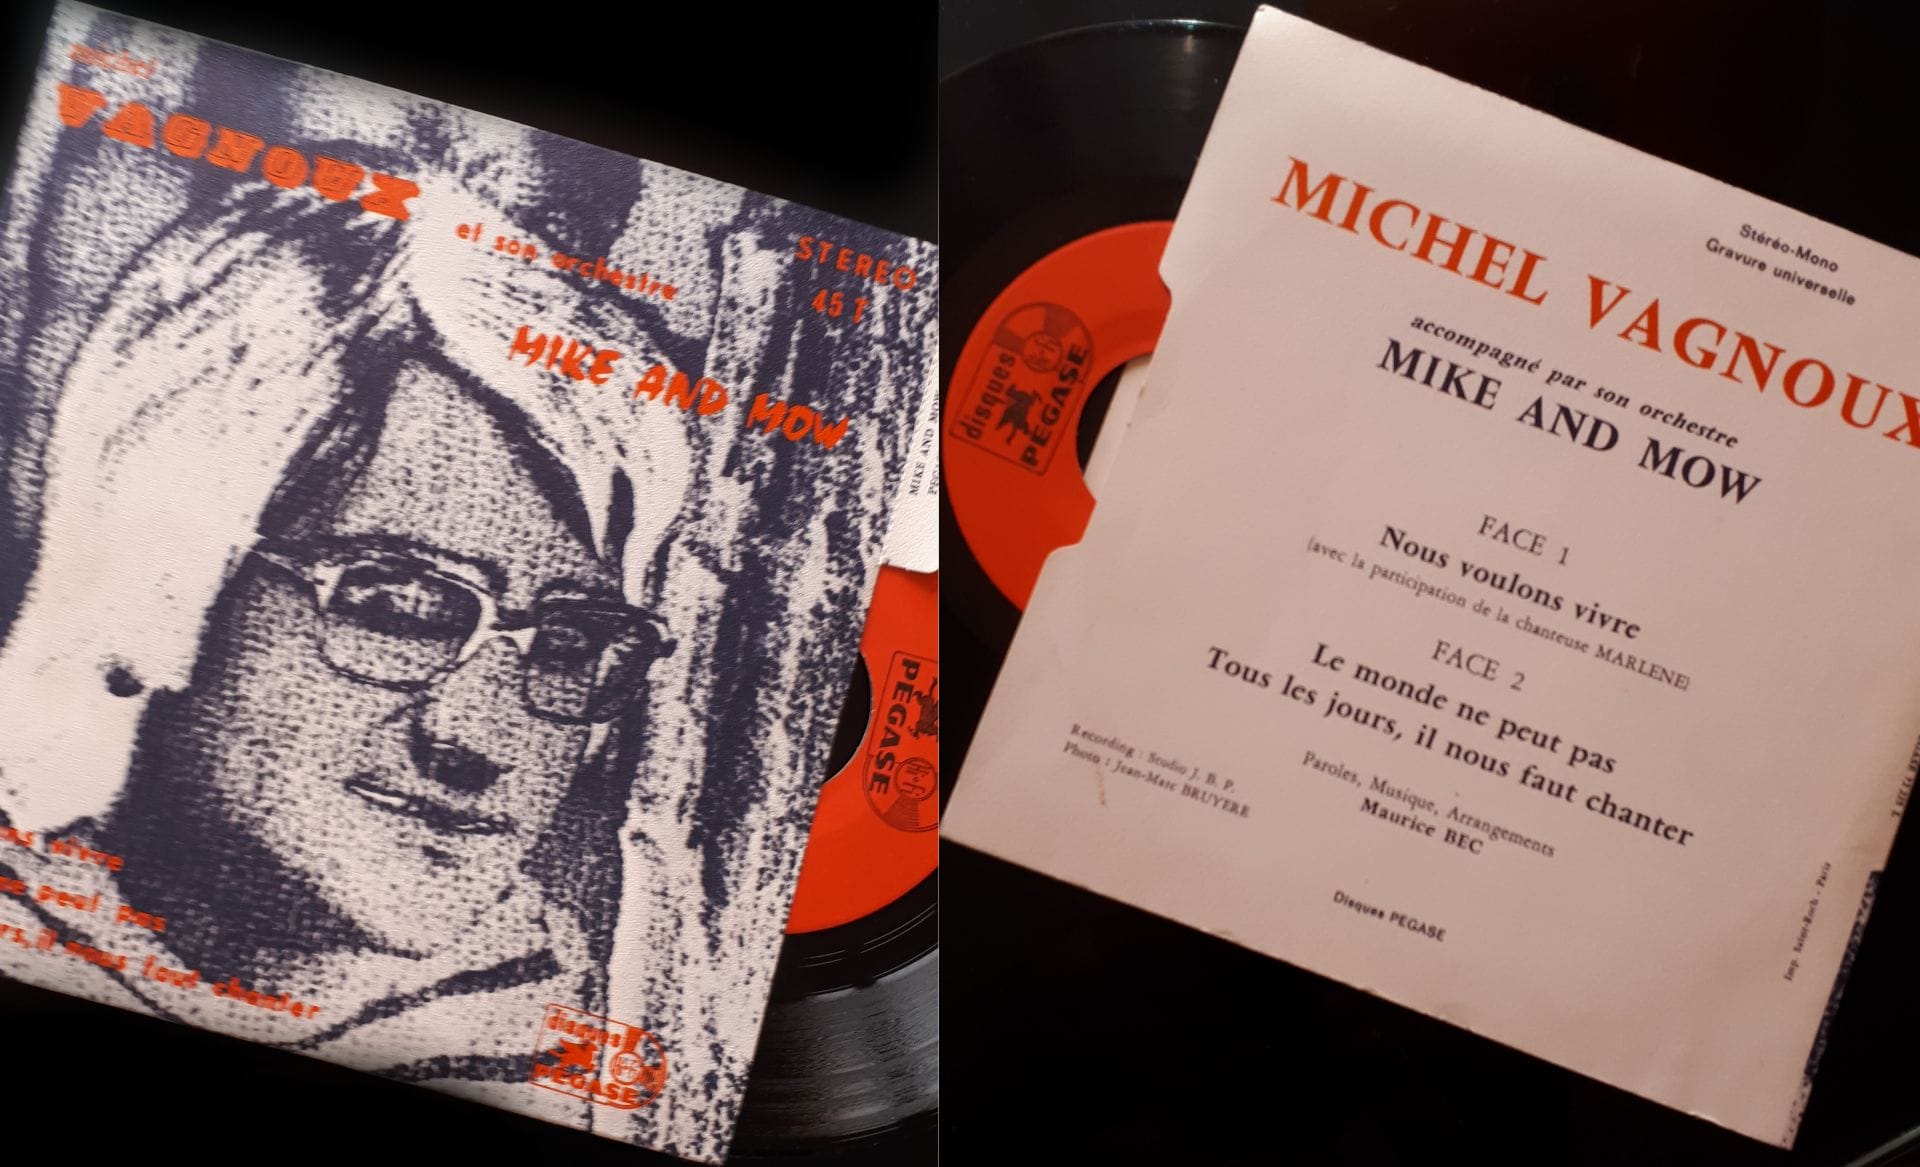 Pochette album mike and mow